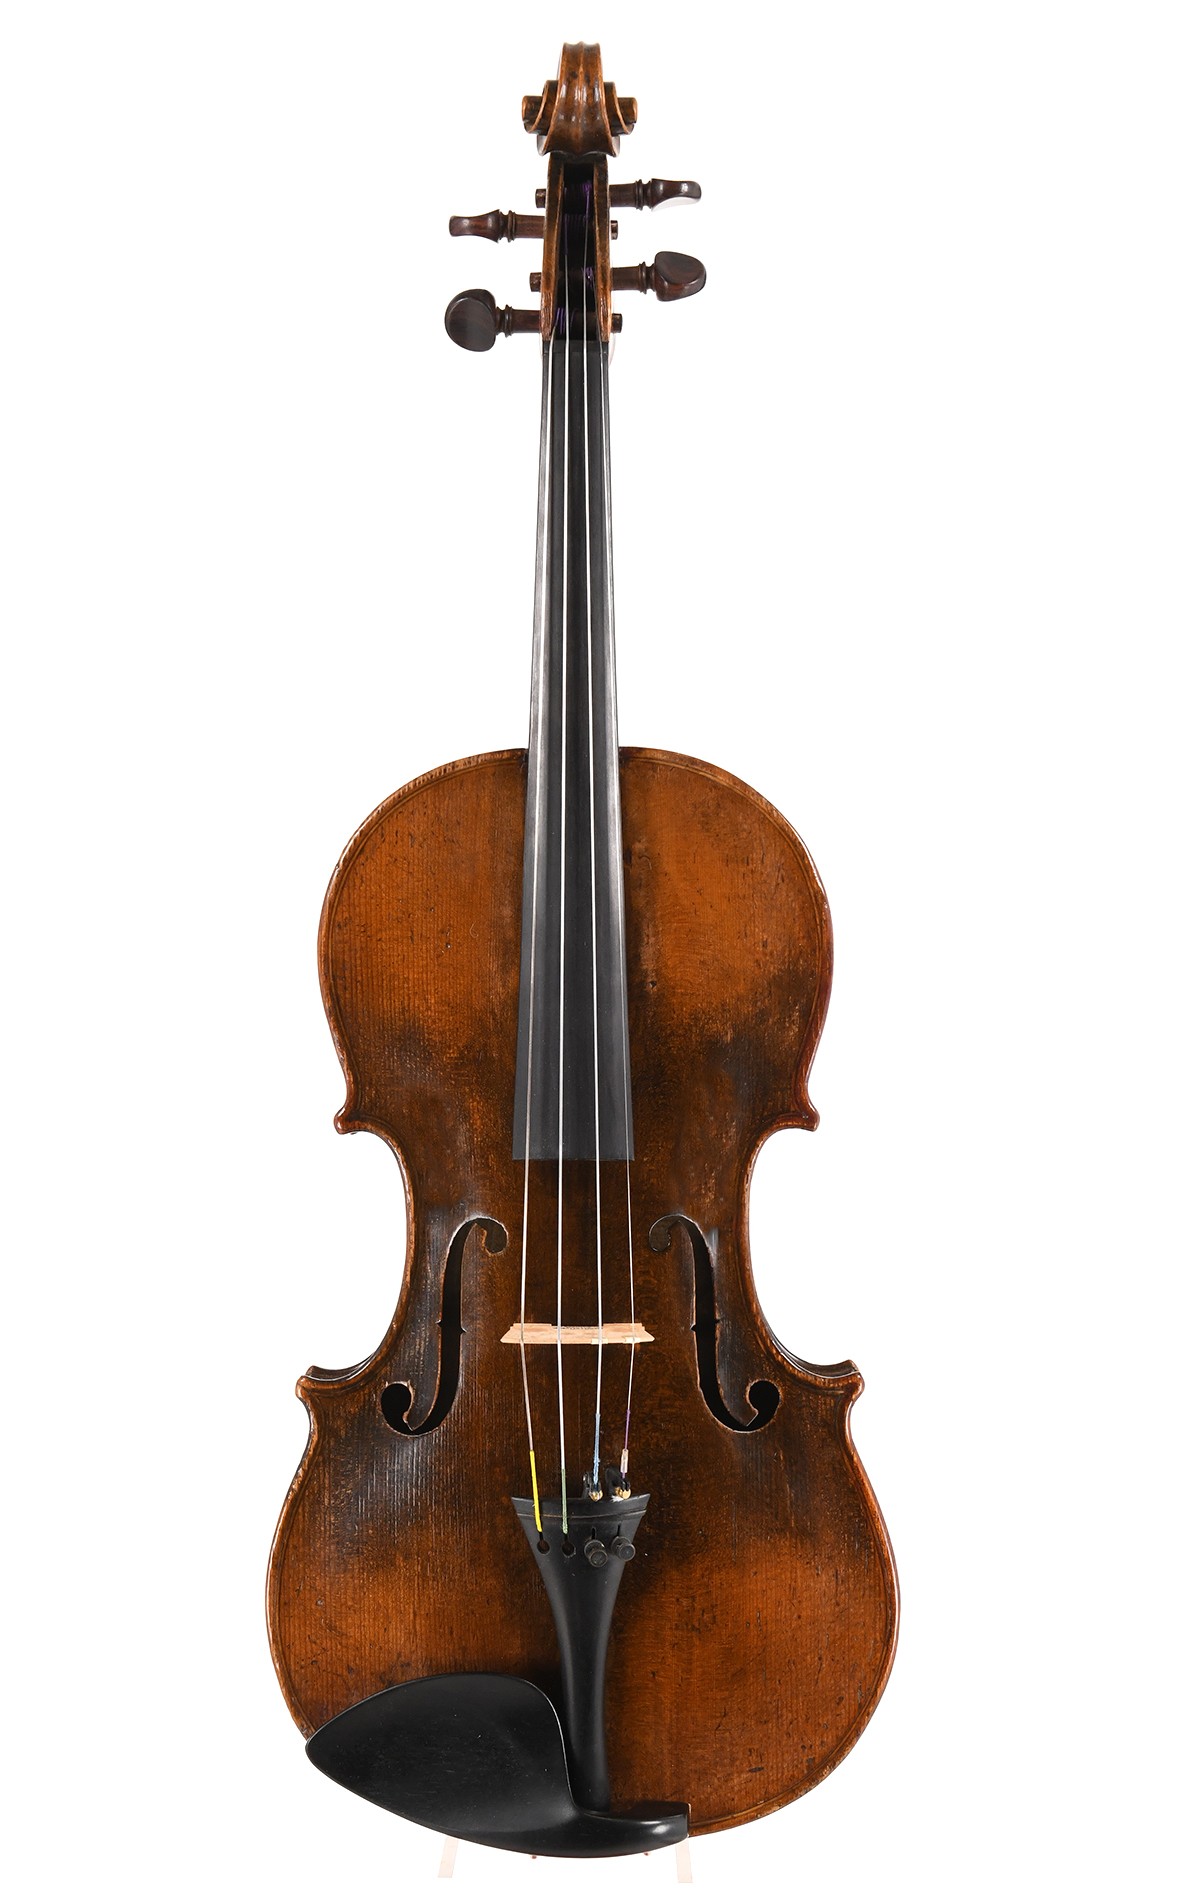 Violine von Charles Claudot "le Marquis de lair", Mirecourt